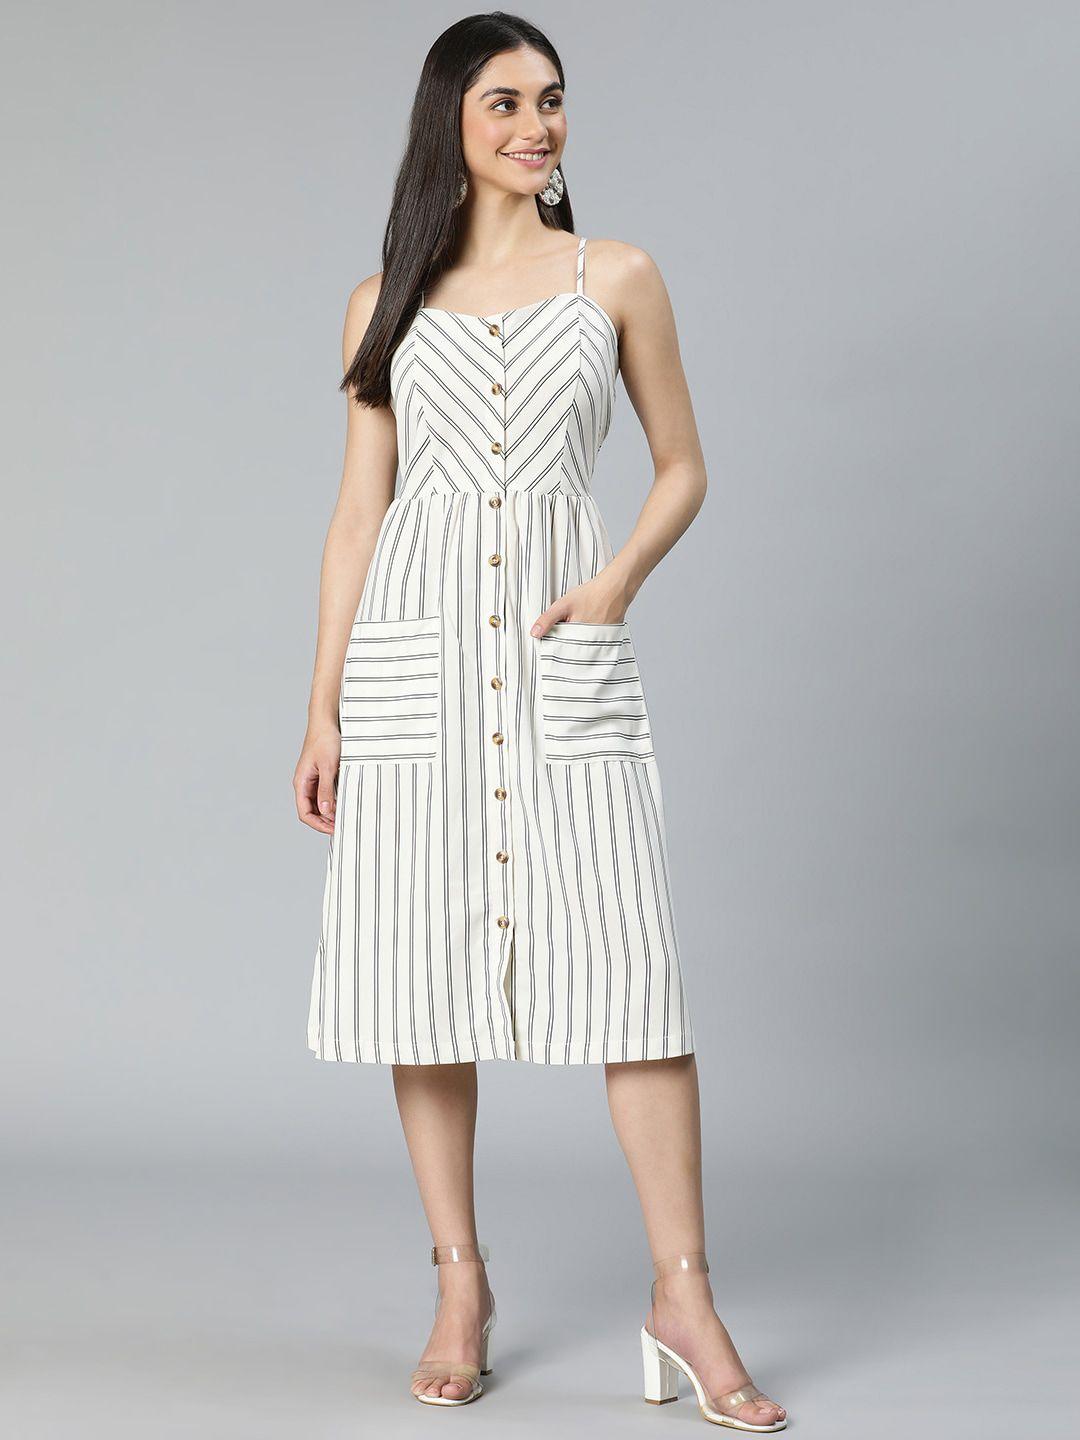 oxolloxo-white-striped-midi-dress